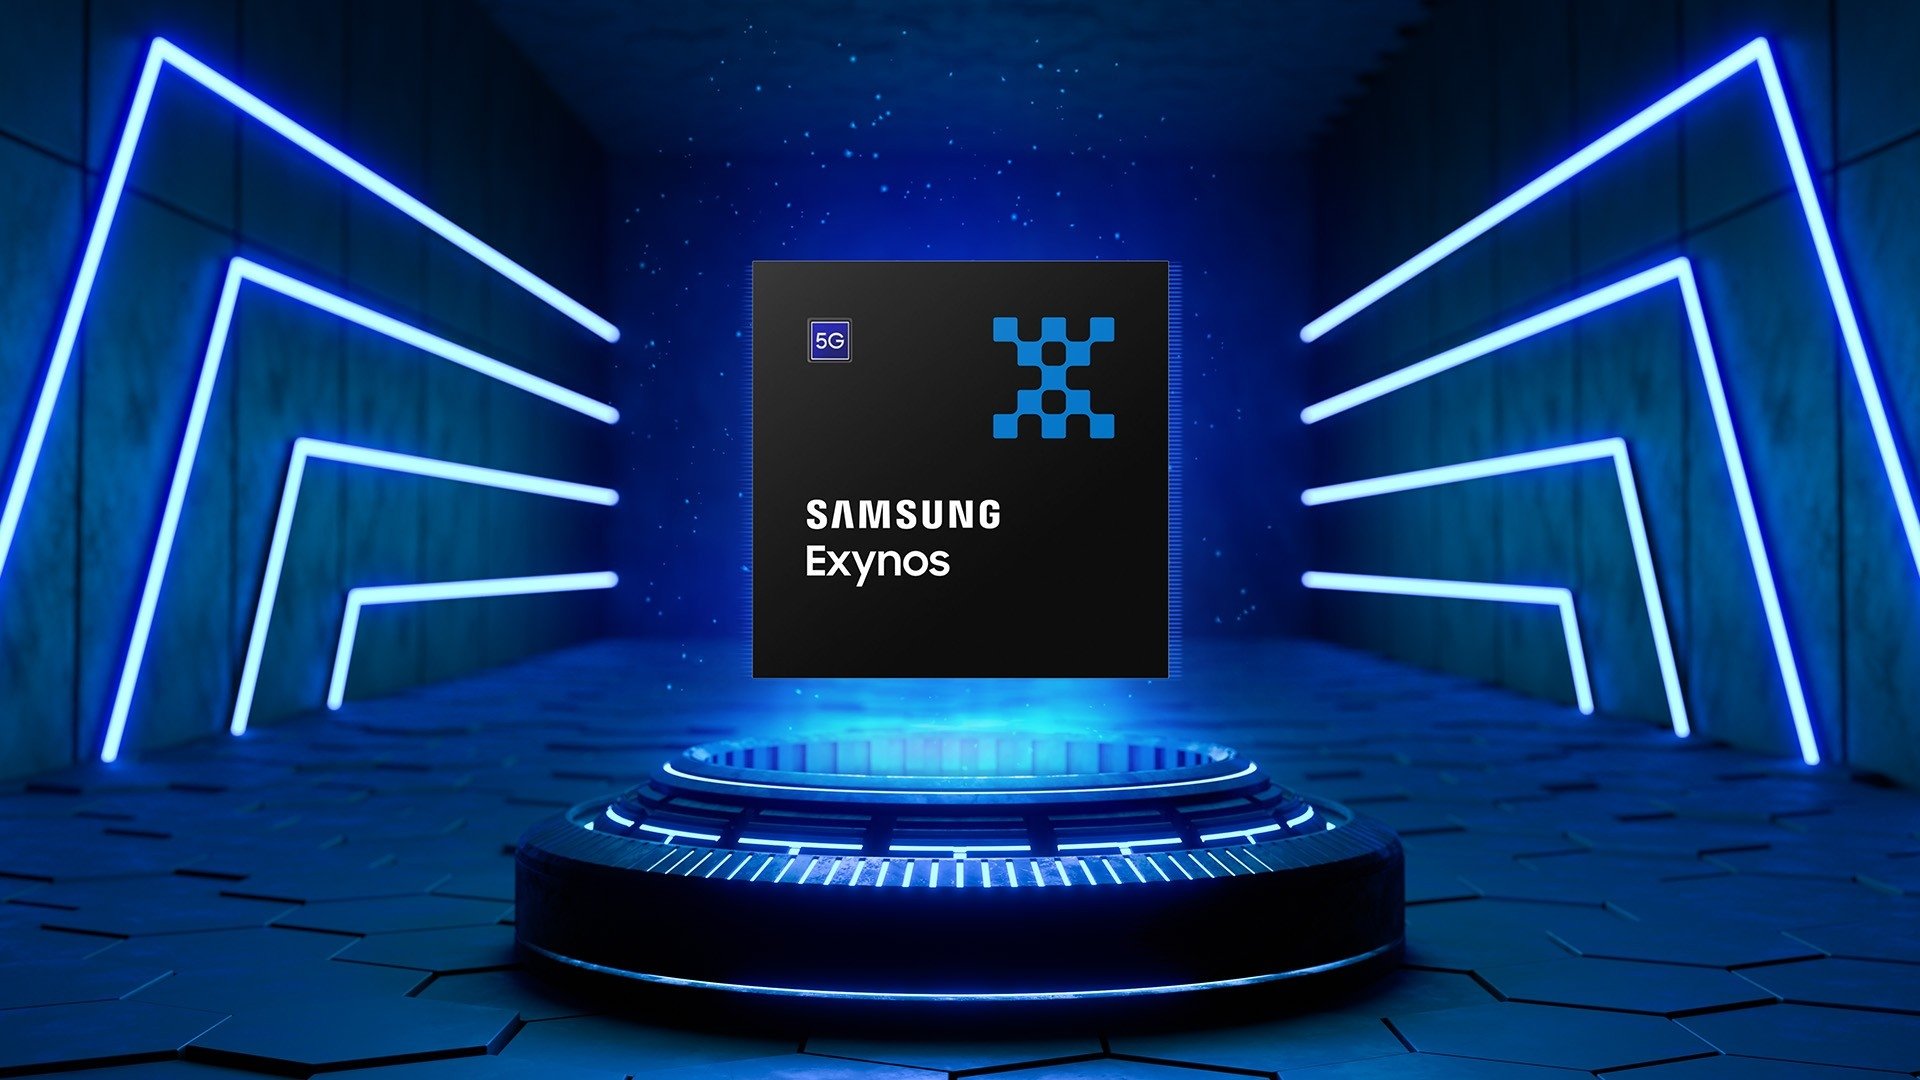 processador exynos da Samsung sobre um pedestral azul de luz